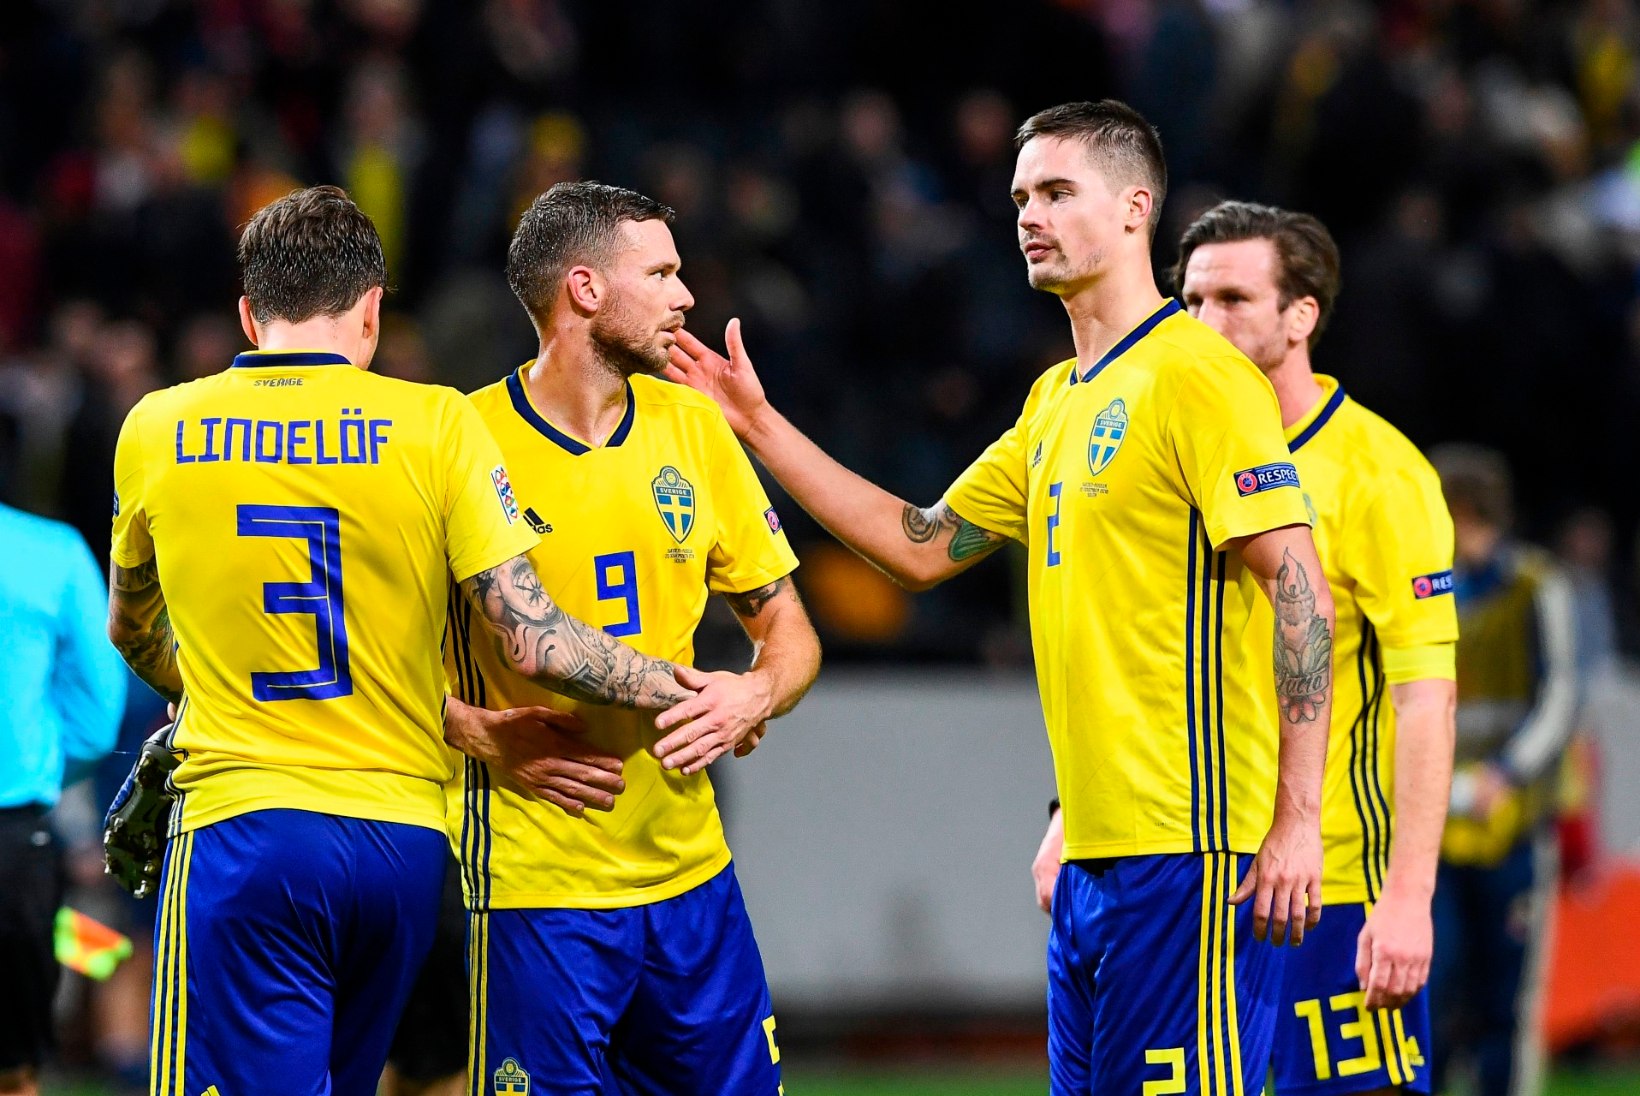 Rootsi jalgpallikoondis tõusis viimasena A-liigasse